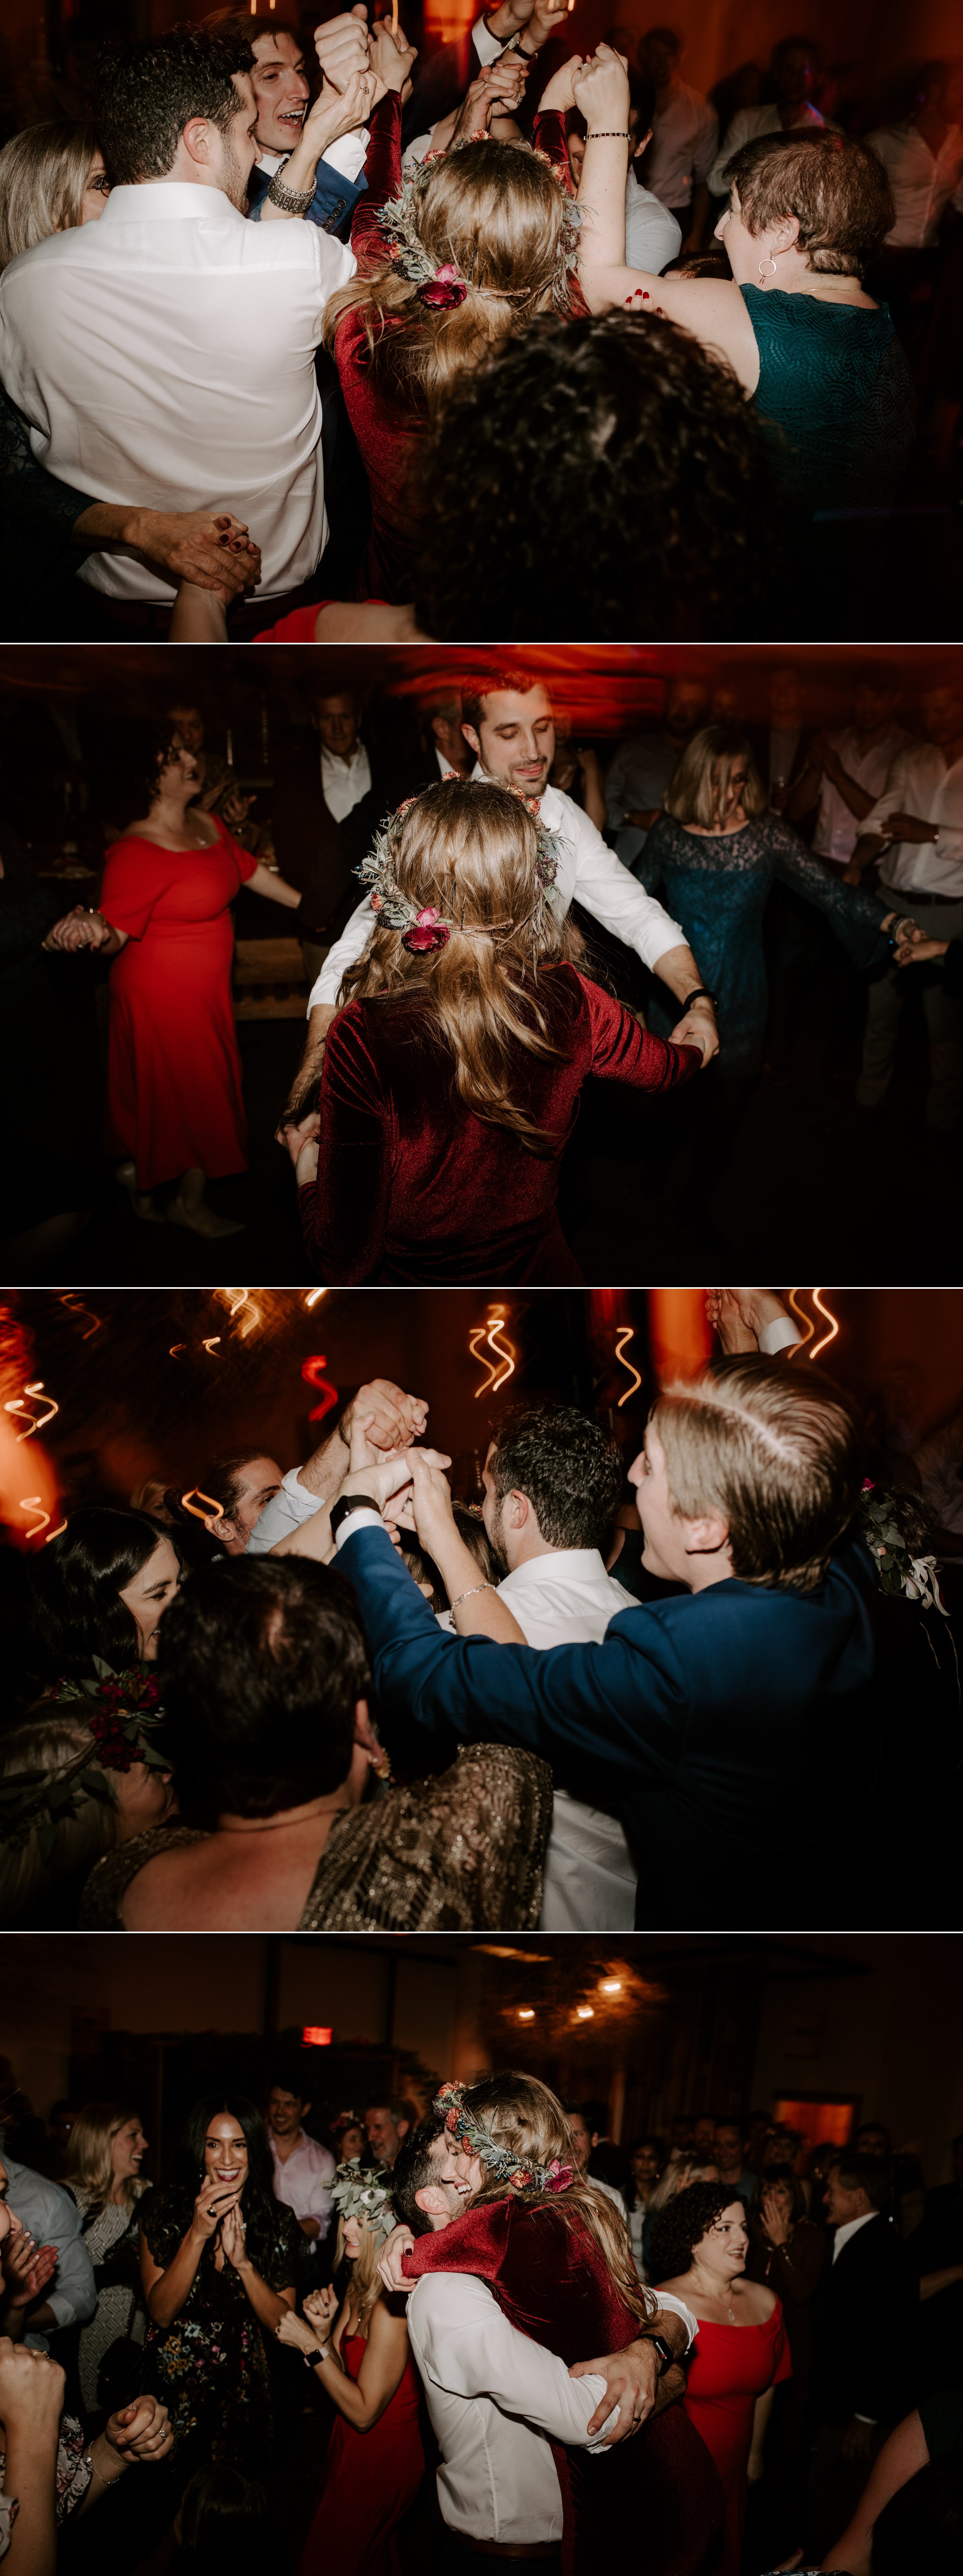  dancing vuka collective wedding austin texas 